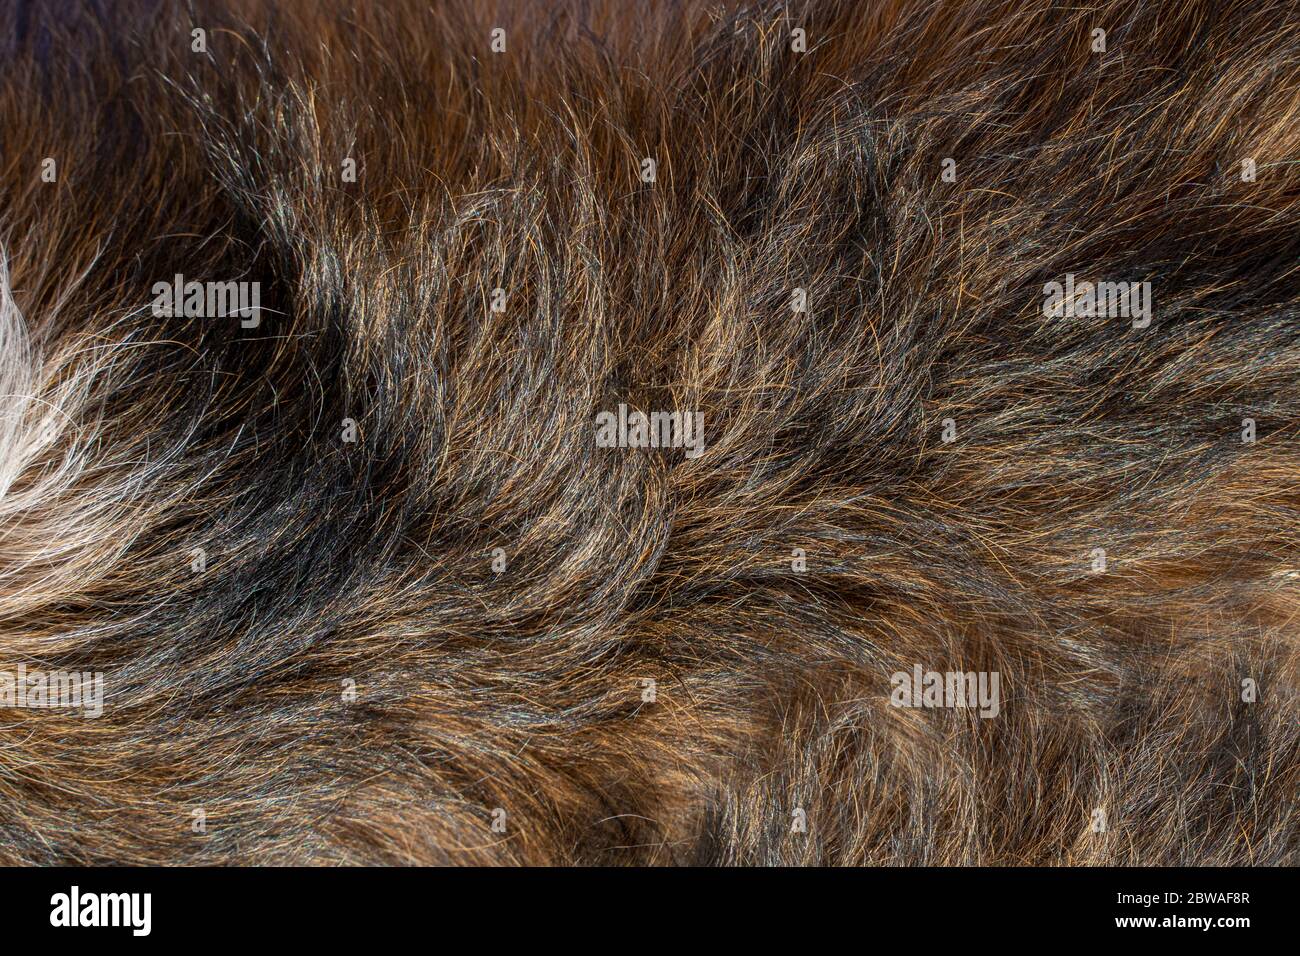 Dog hair texture. Animal fur close-up. Stock Photo